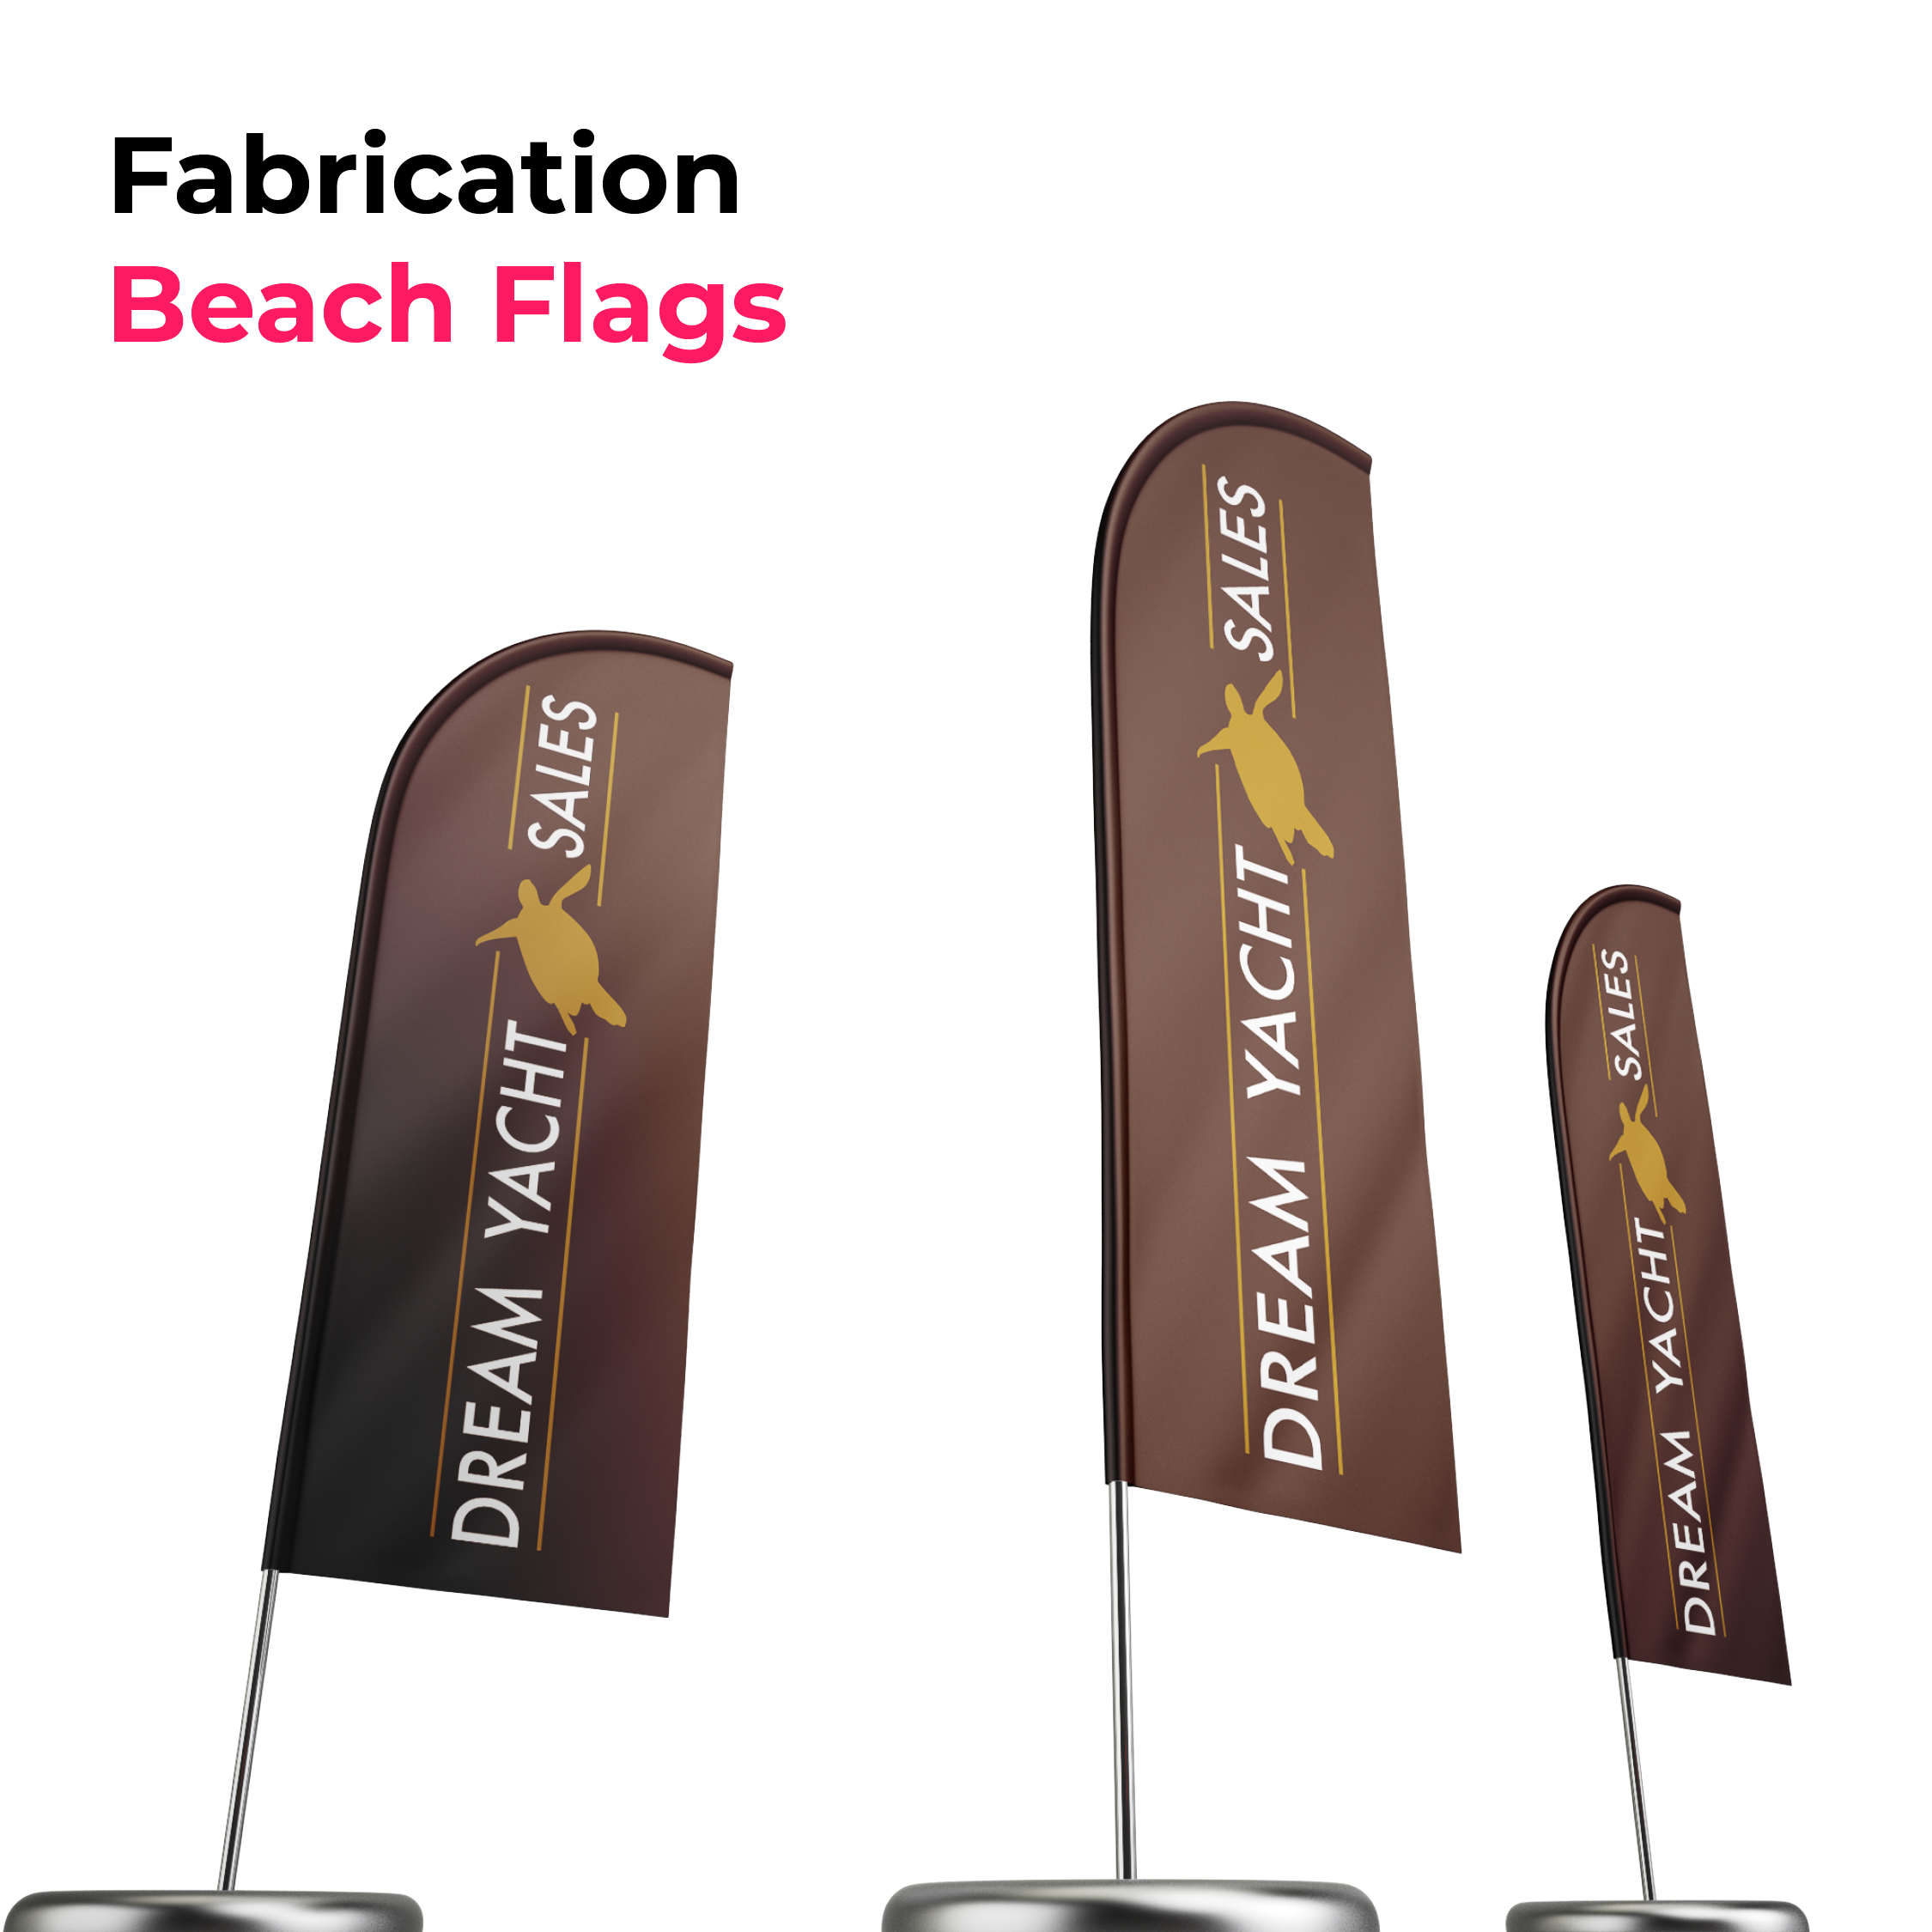 trois beach flags marrons avec le logo dream yacht charter couleur blanc et or dessus